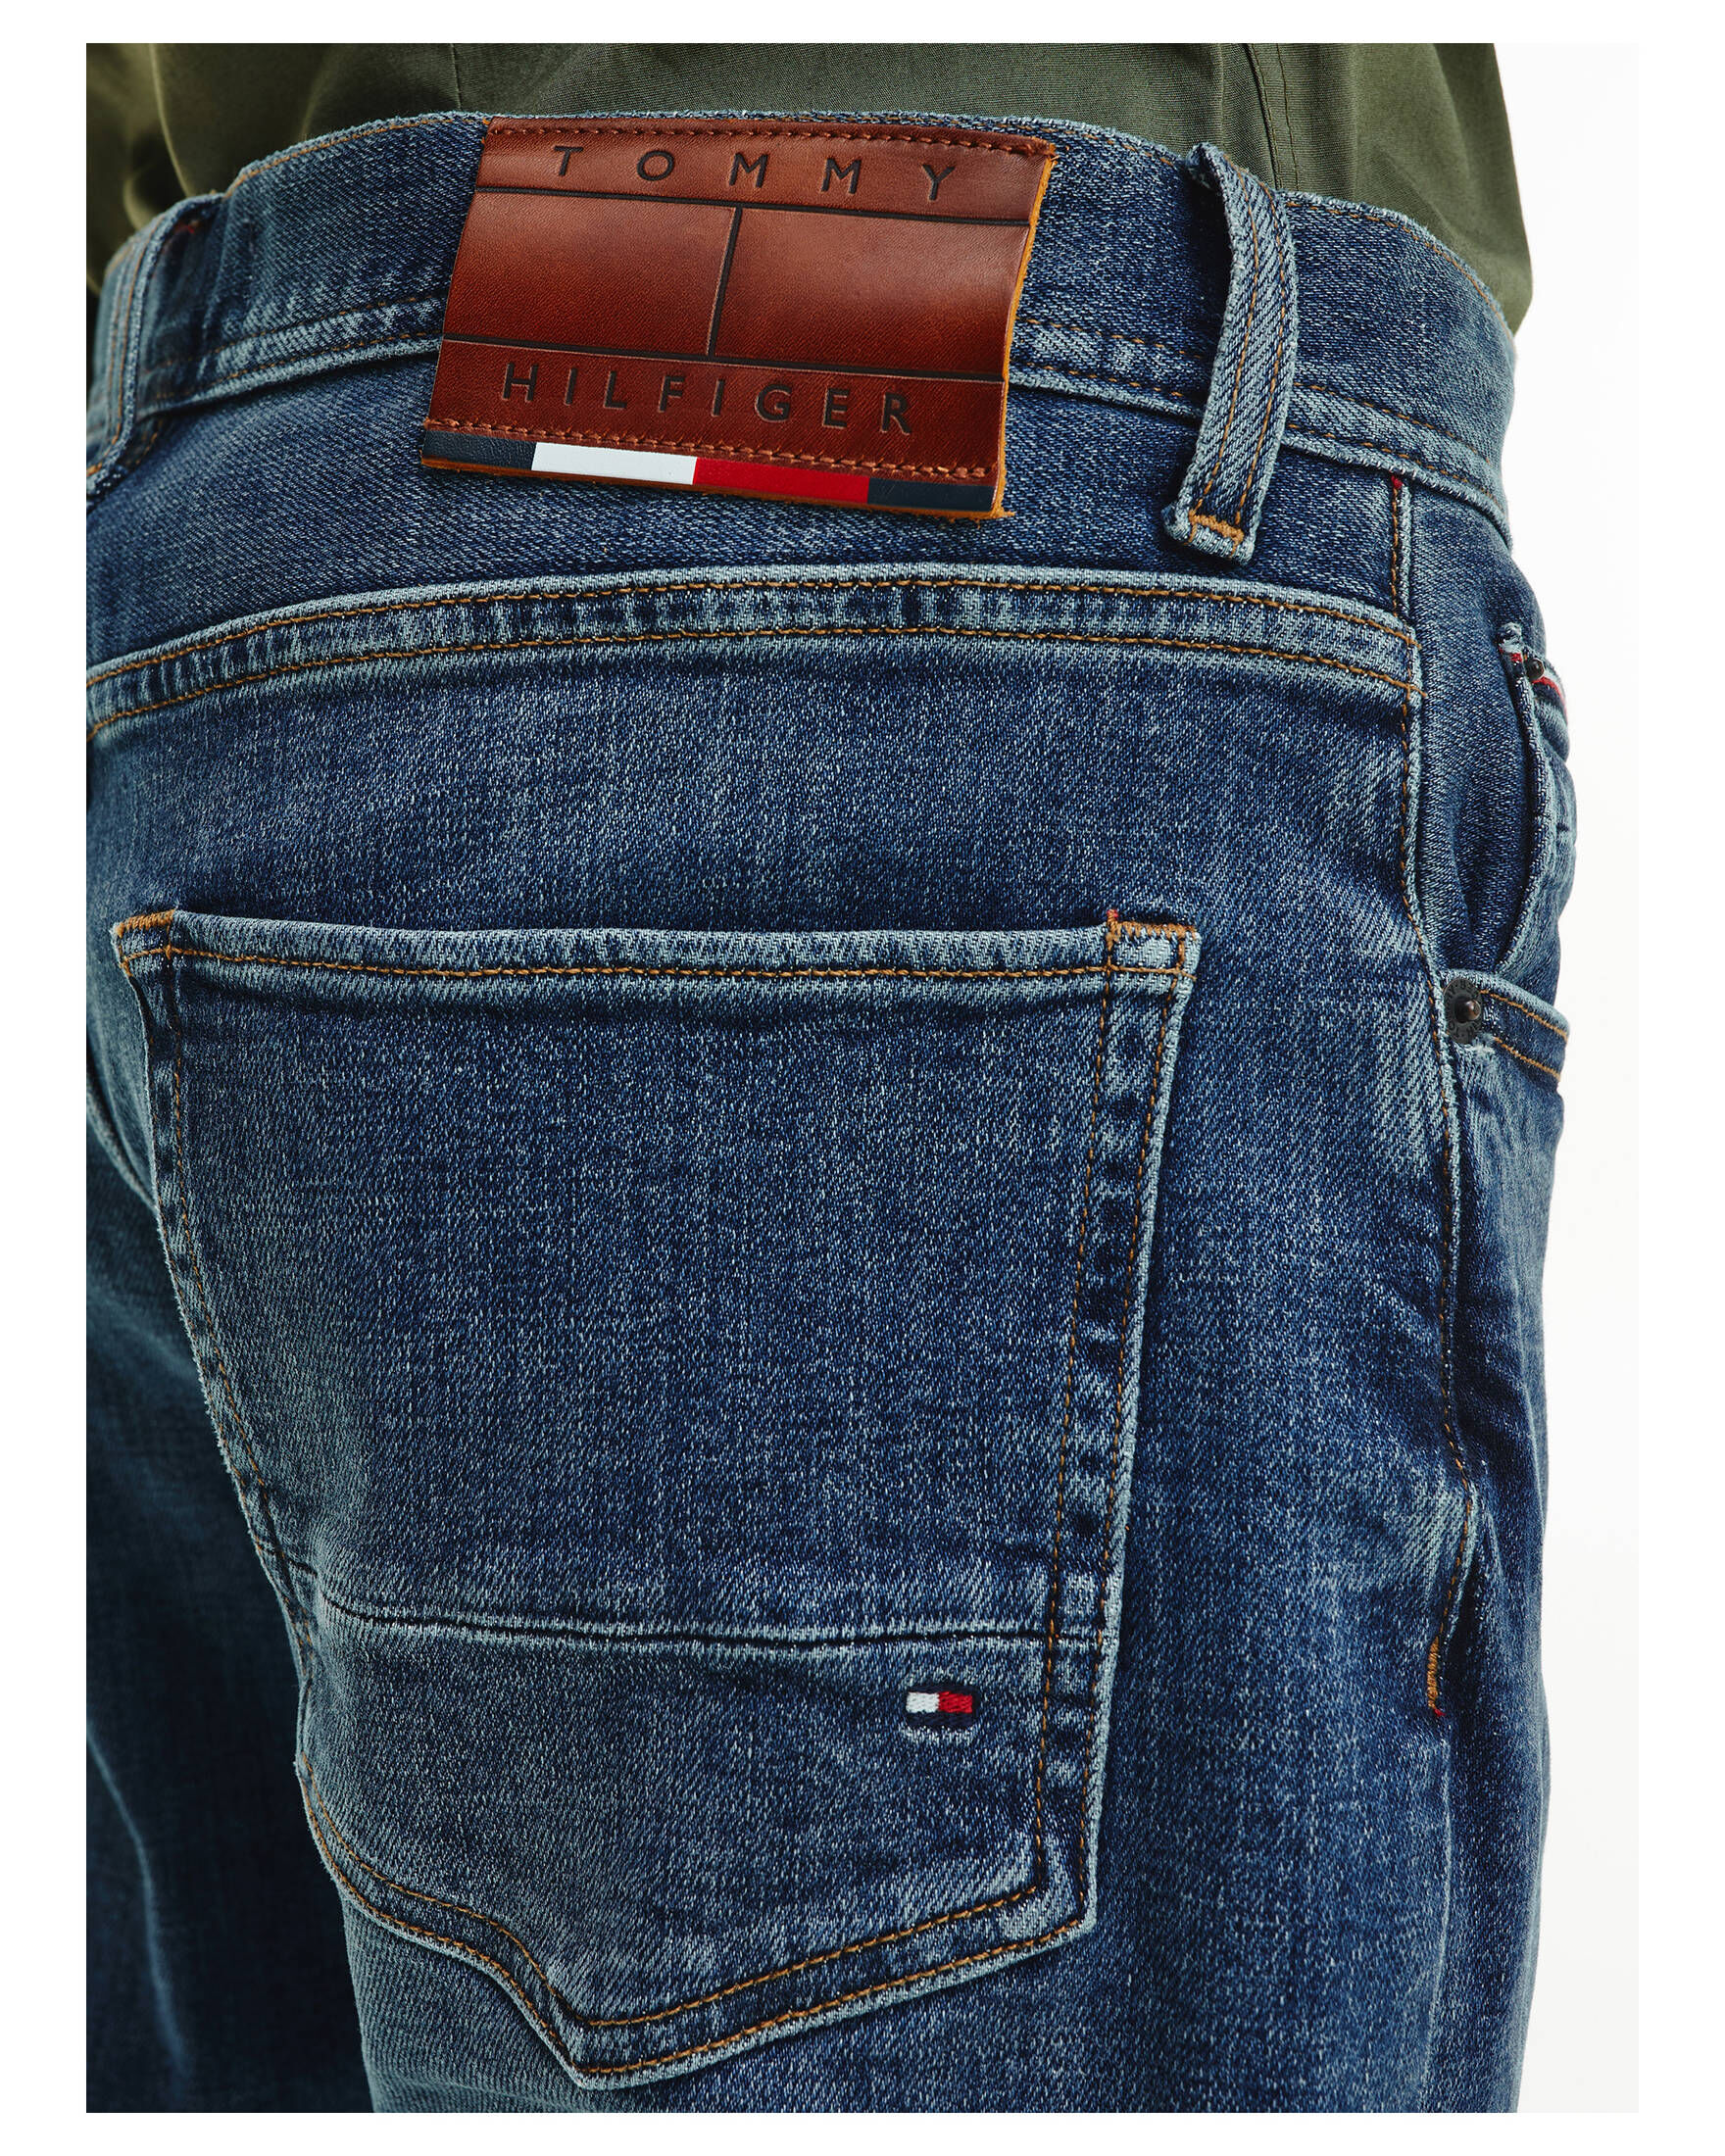 Tommy Hilfiger Herren Jeans "Tapered kaufen | engelhorn